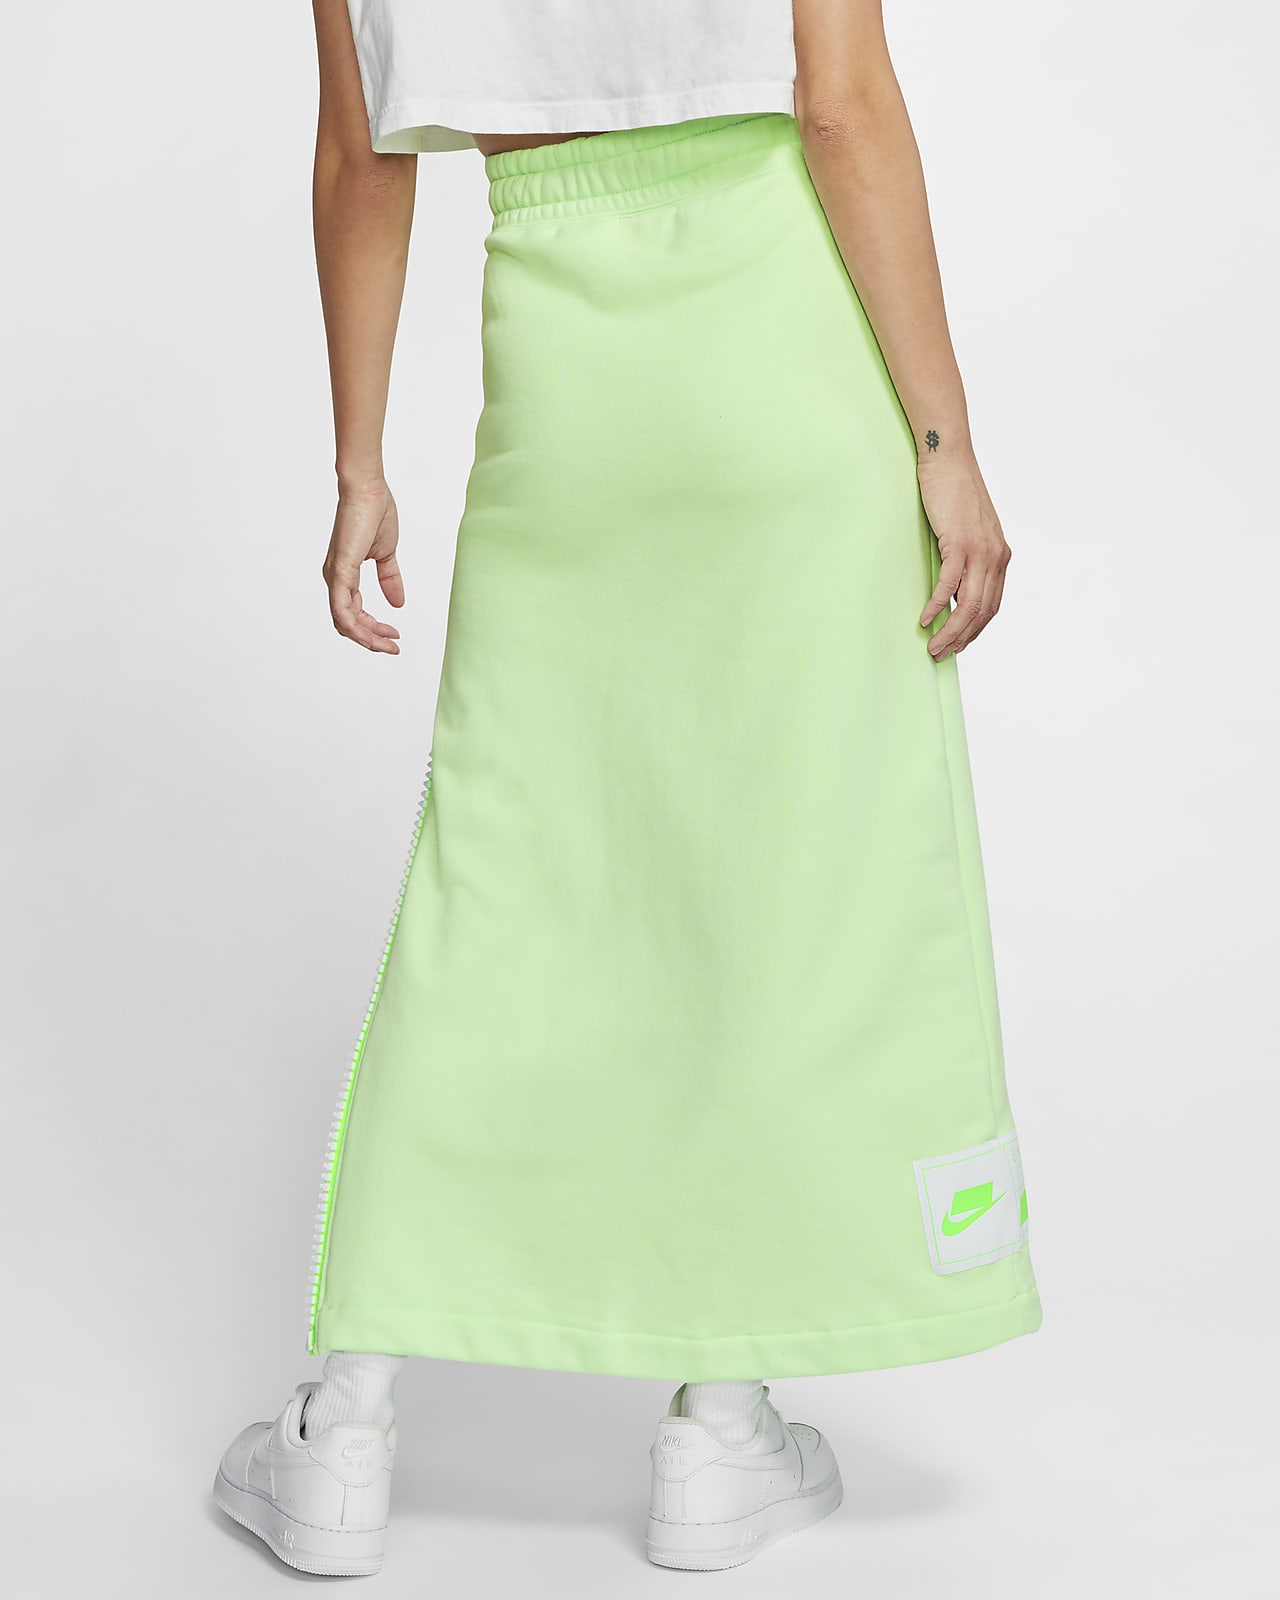 Nike Sportswear NSW Women's Fleece Skirt. Nike SG